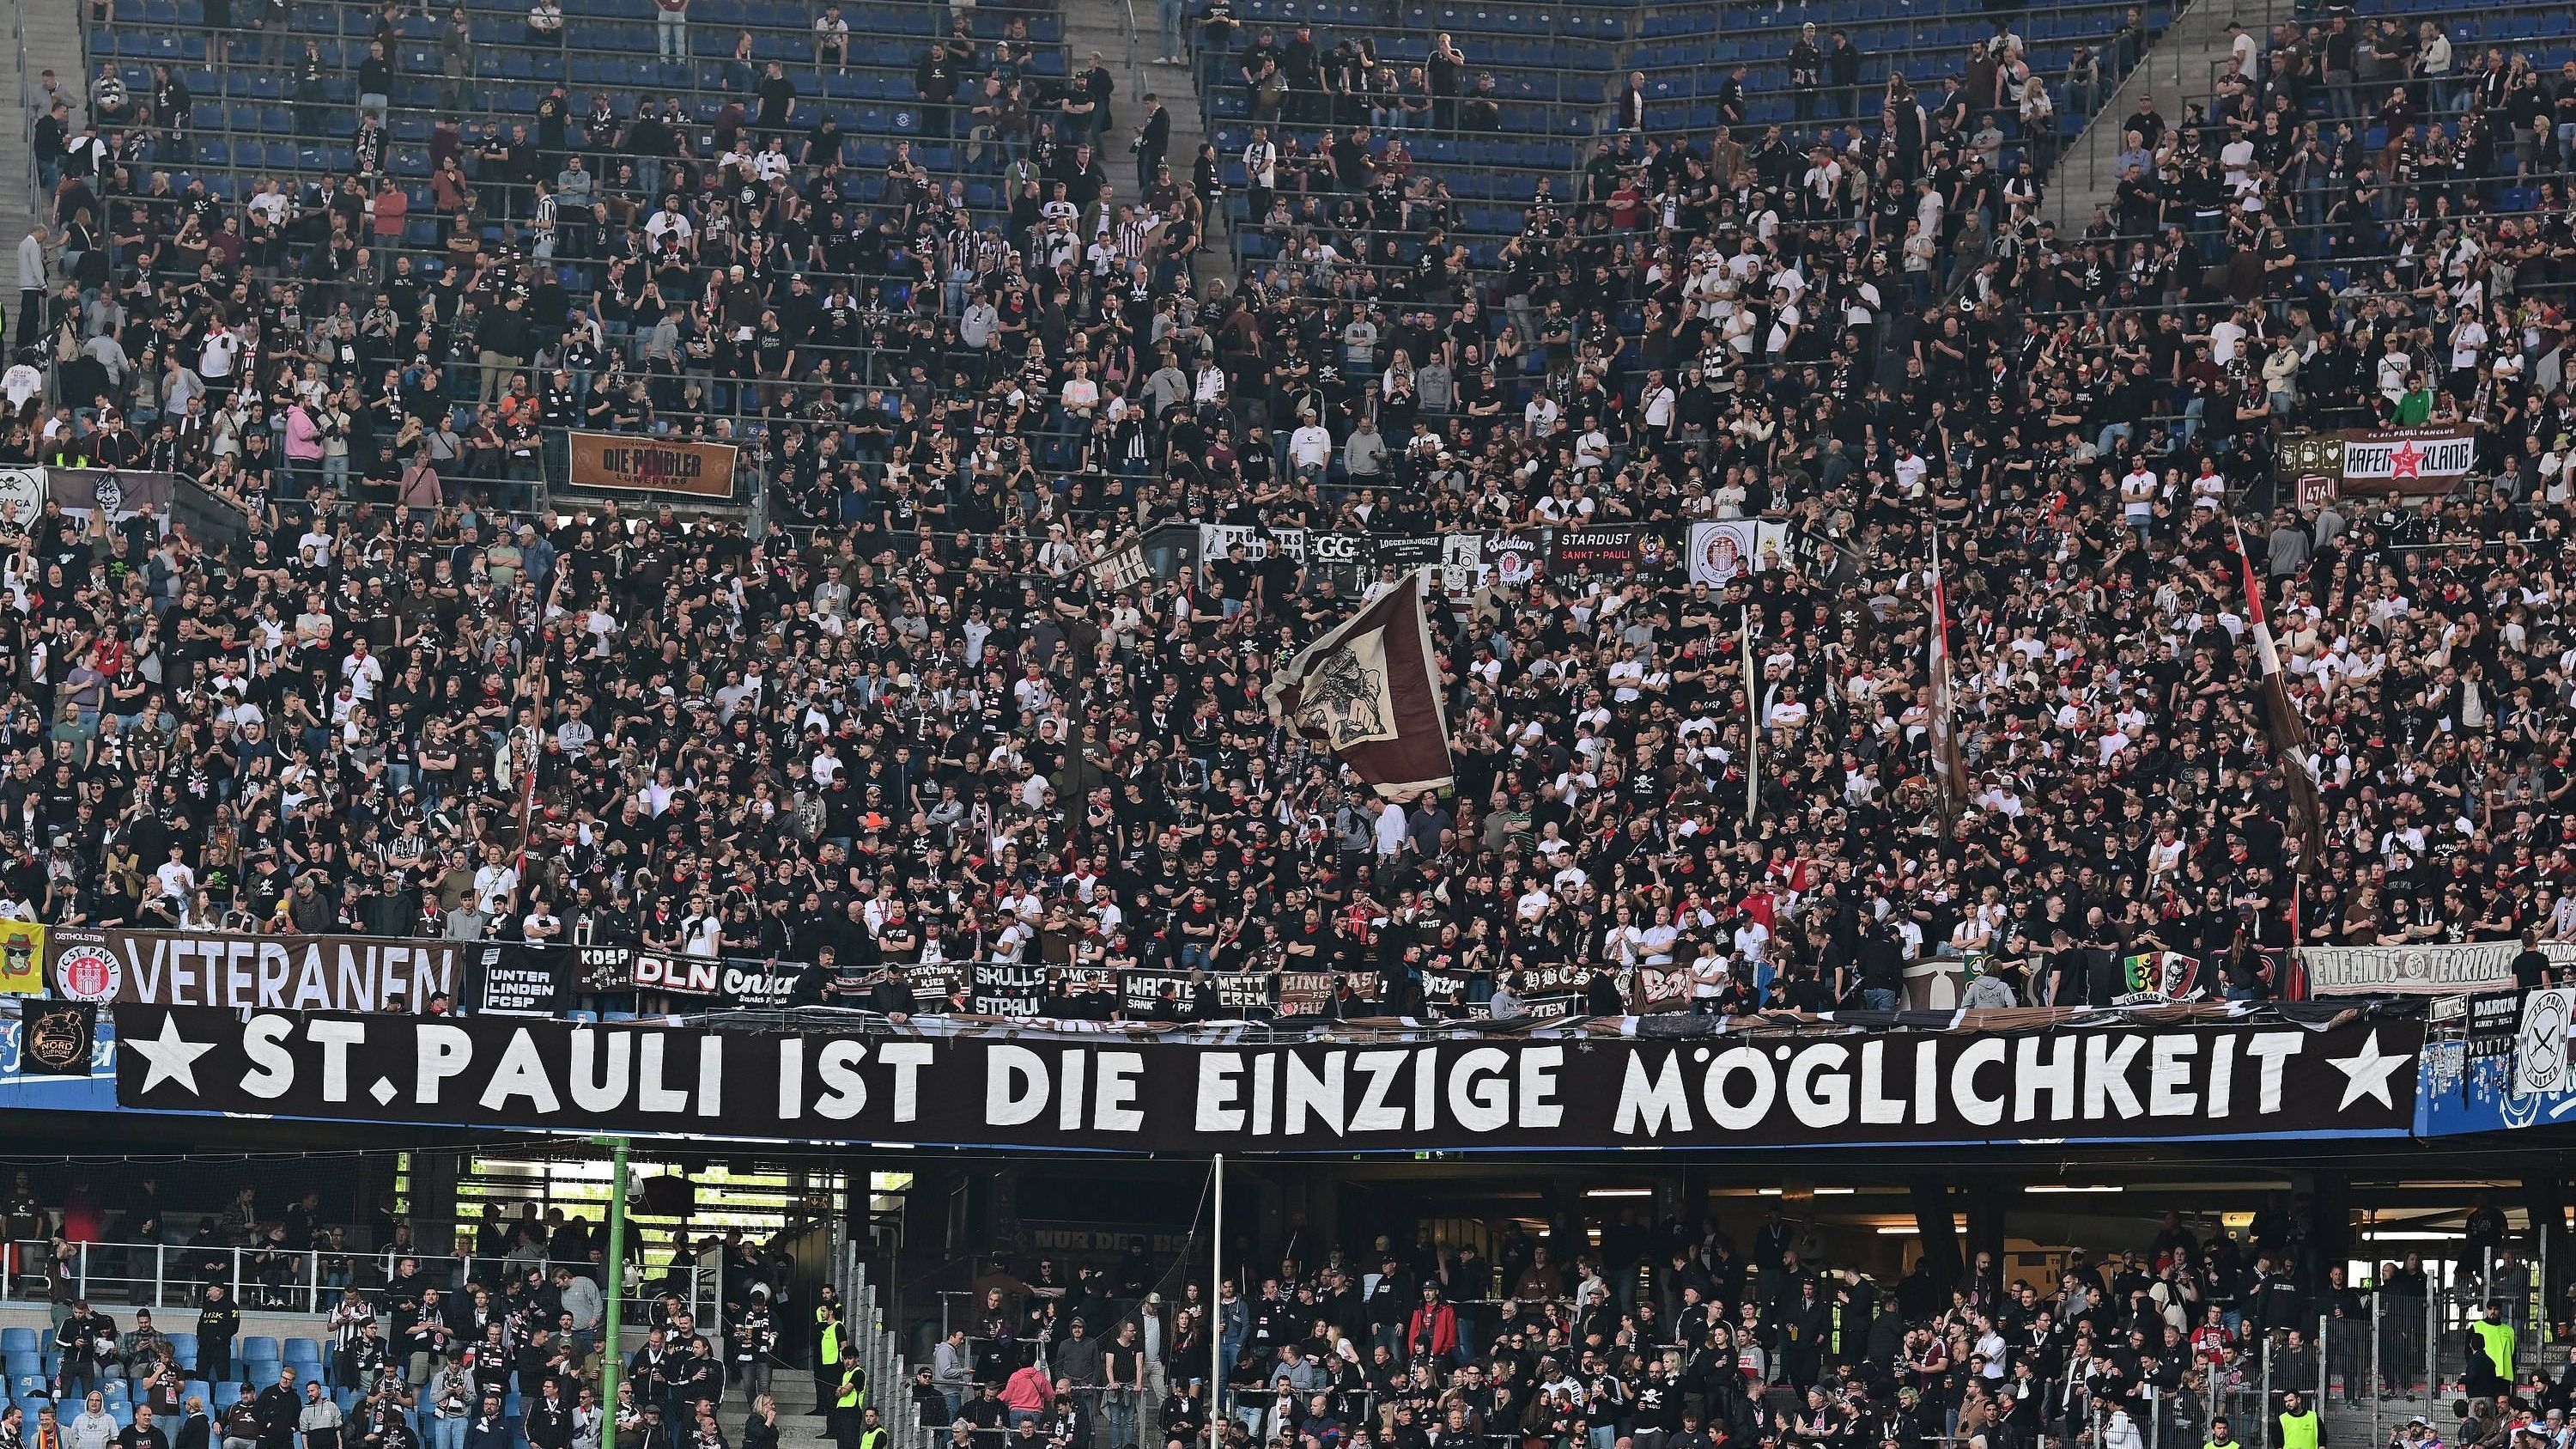 <strong>"St. Pauli ist die einzige Möglichkeit"</strong><br>Auch die Fans des FC St. Pauli haben natürlich ihre eigenen Banner für das Derby im Volksparkstadion mit dabei. Eine der klaren Botschaften: "St. Pauli ist die einzige Möglichkeit"